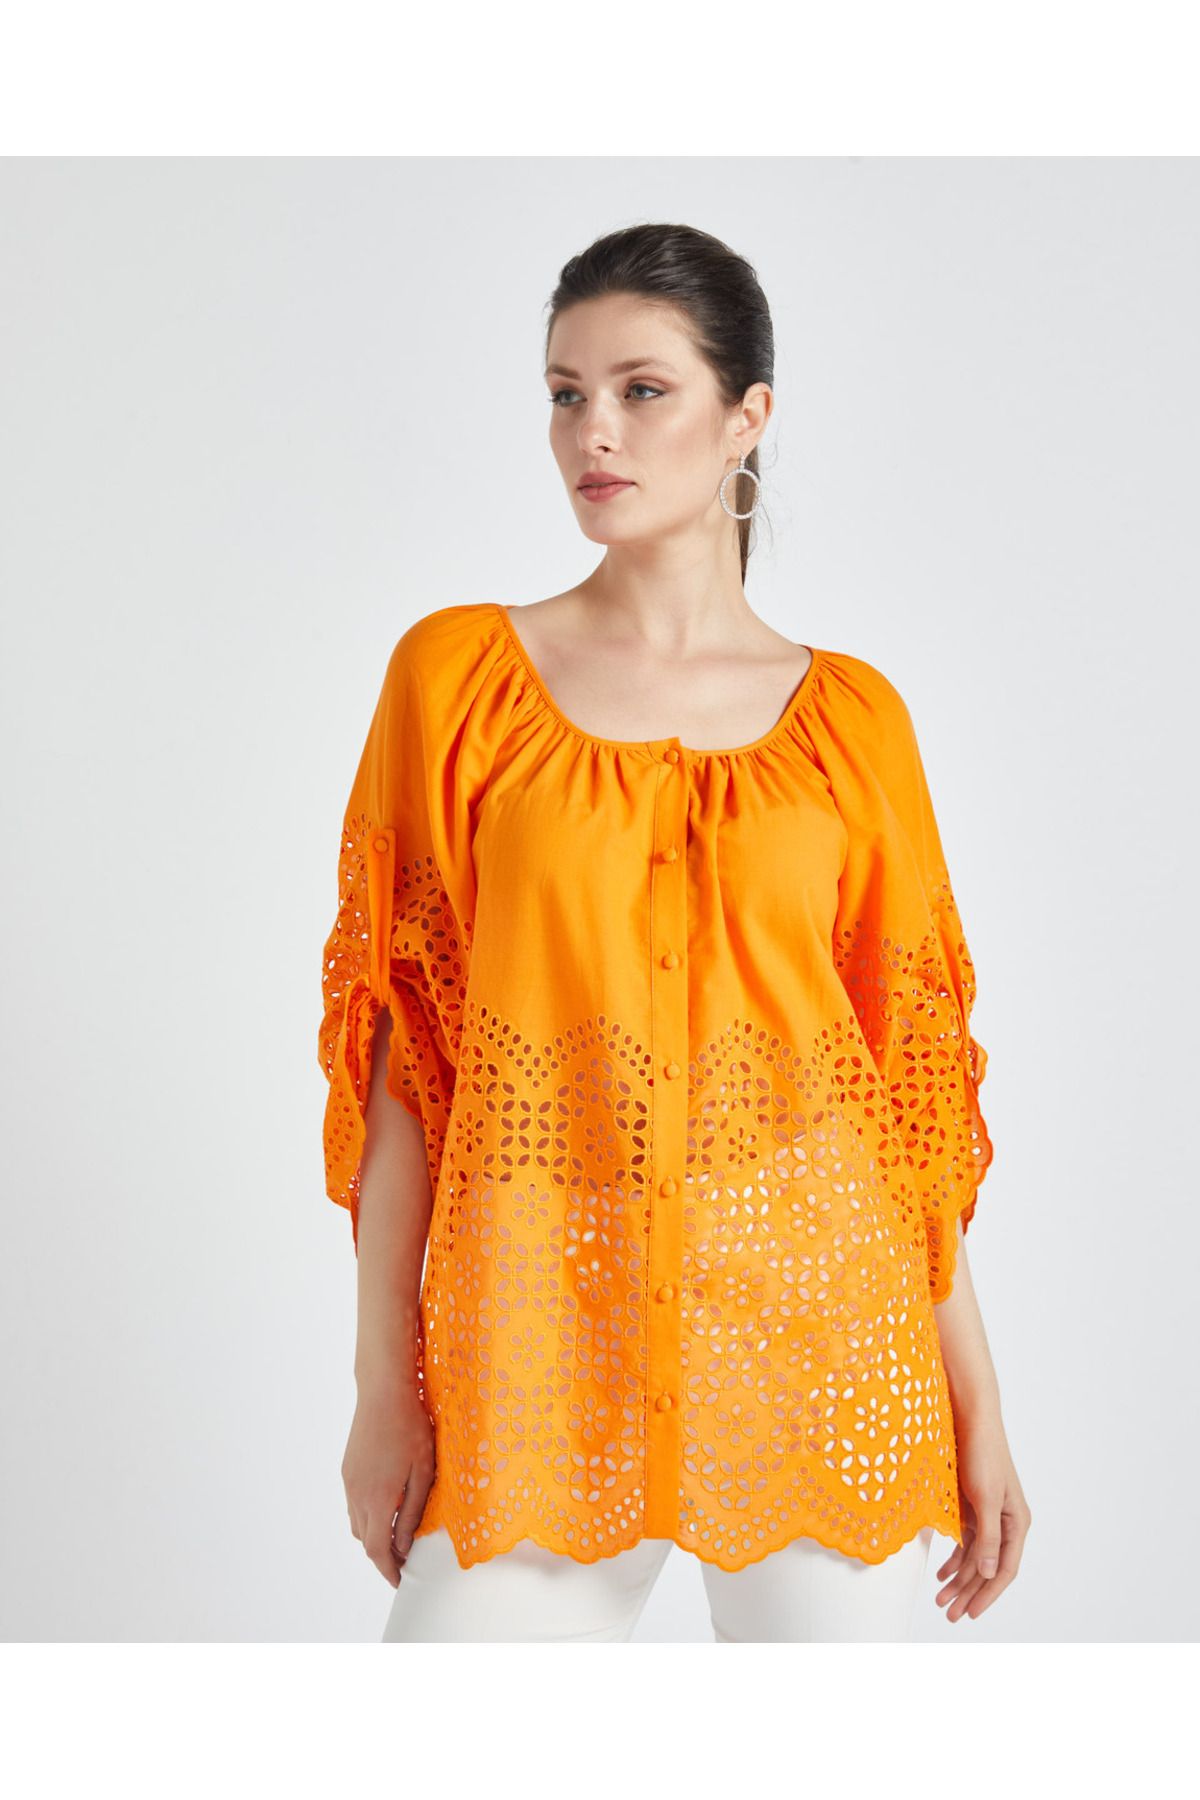 Serpil Serpil Kadın Orange Gömlek 35938